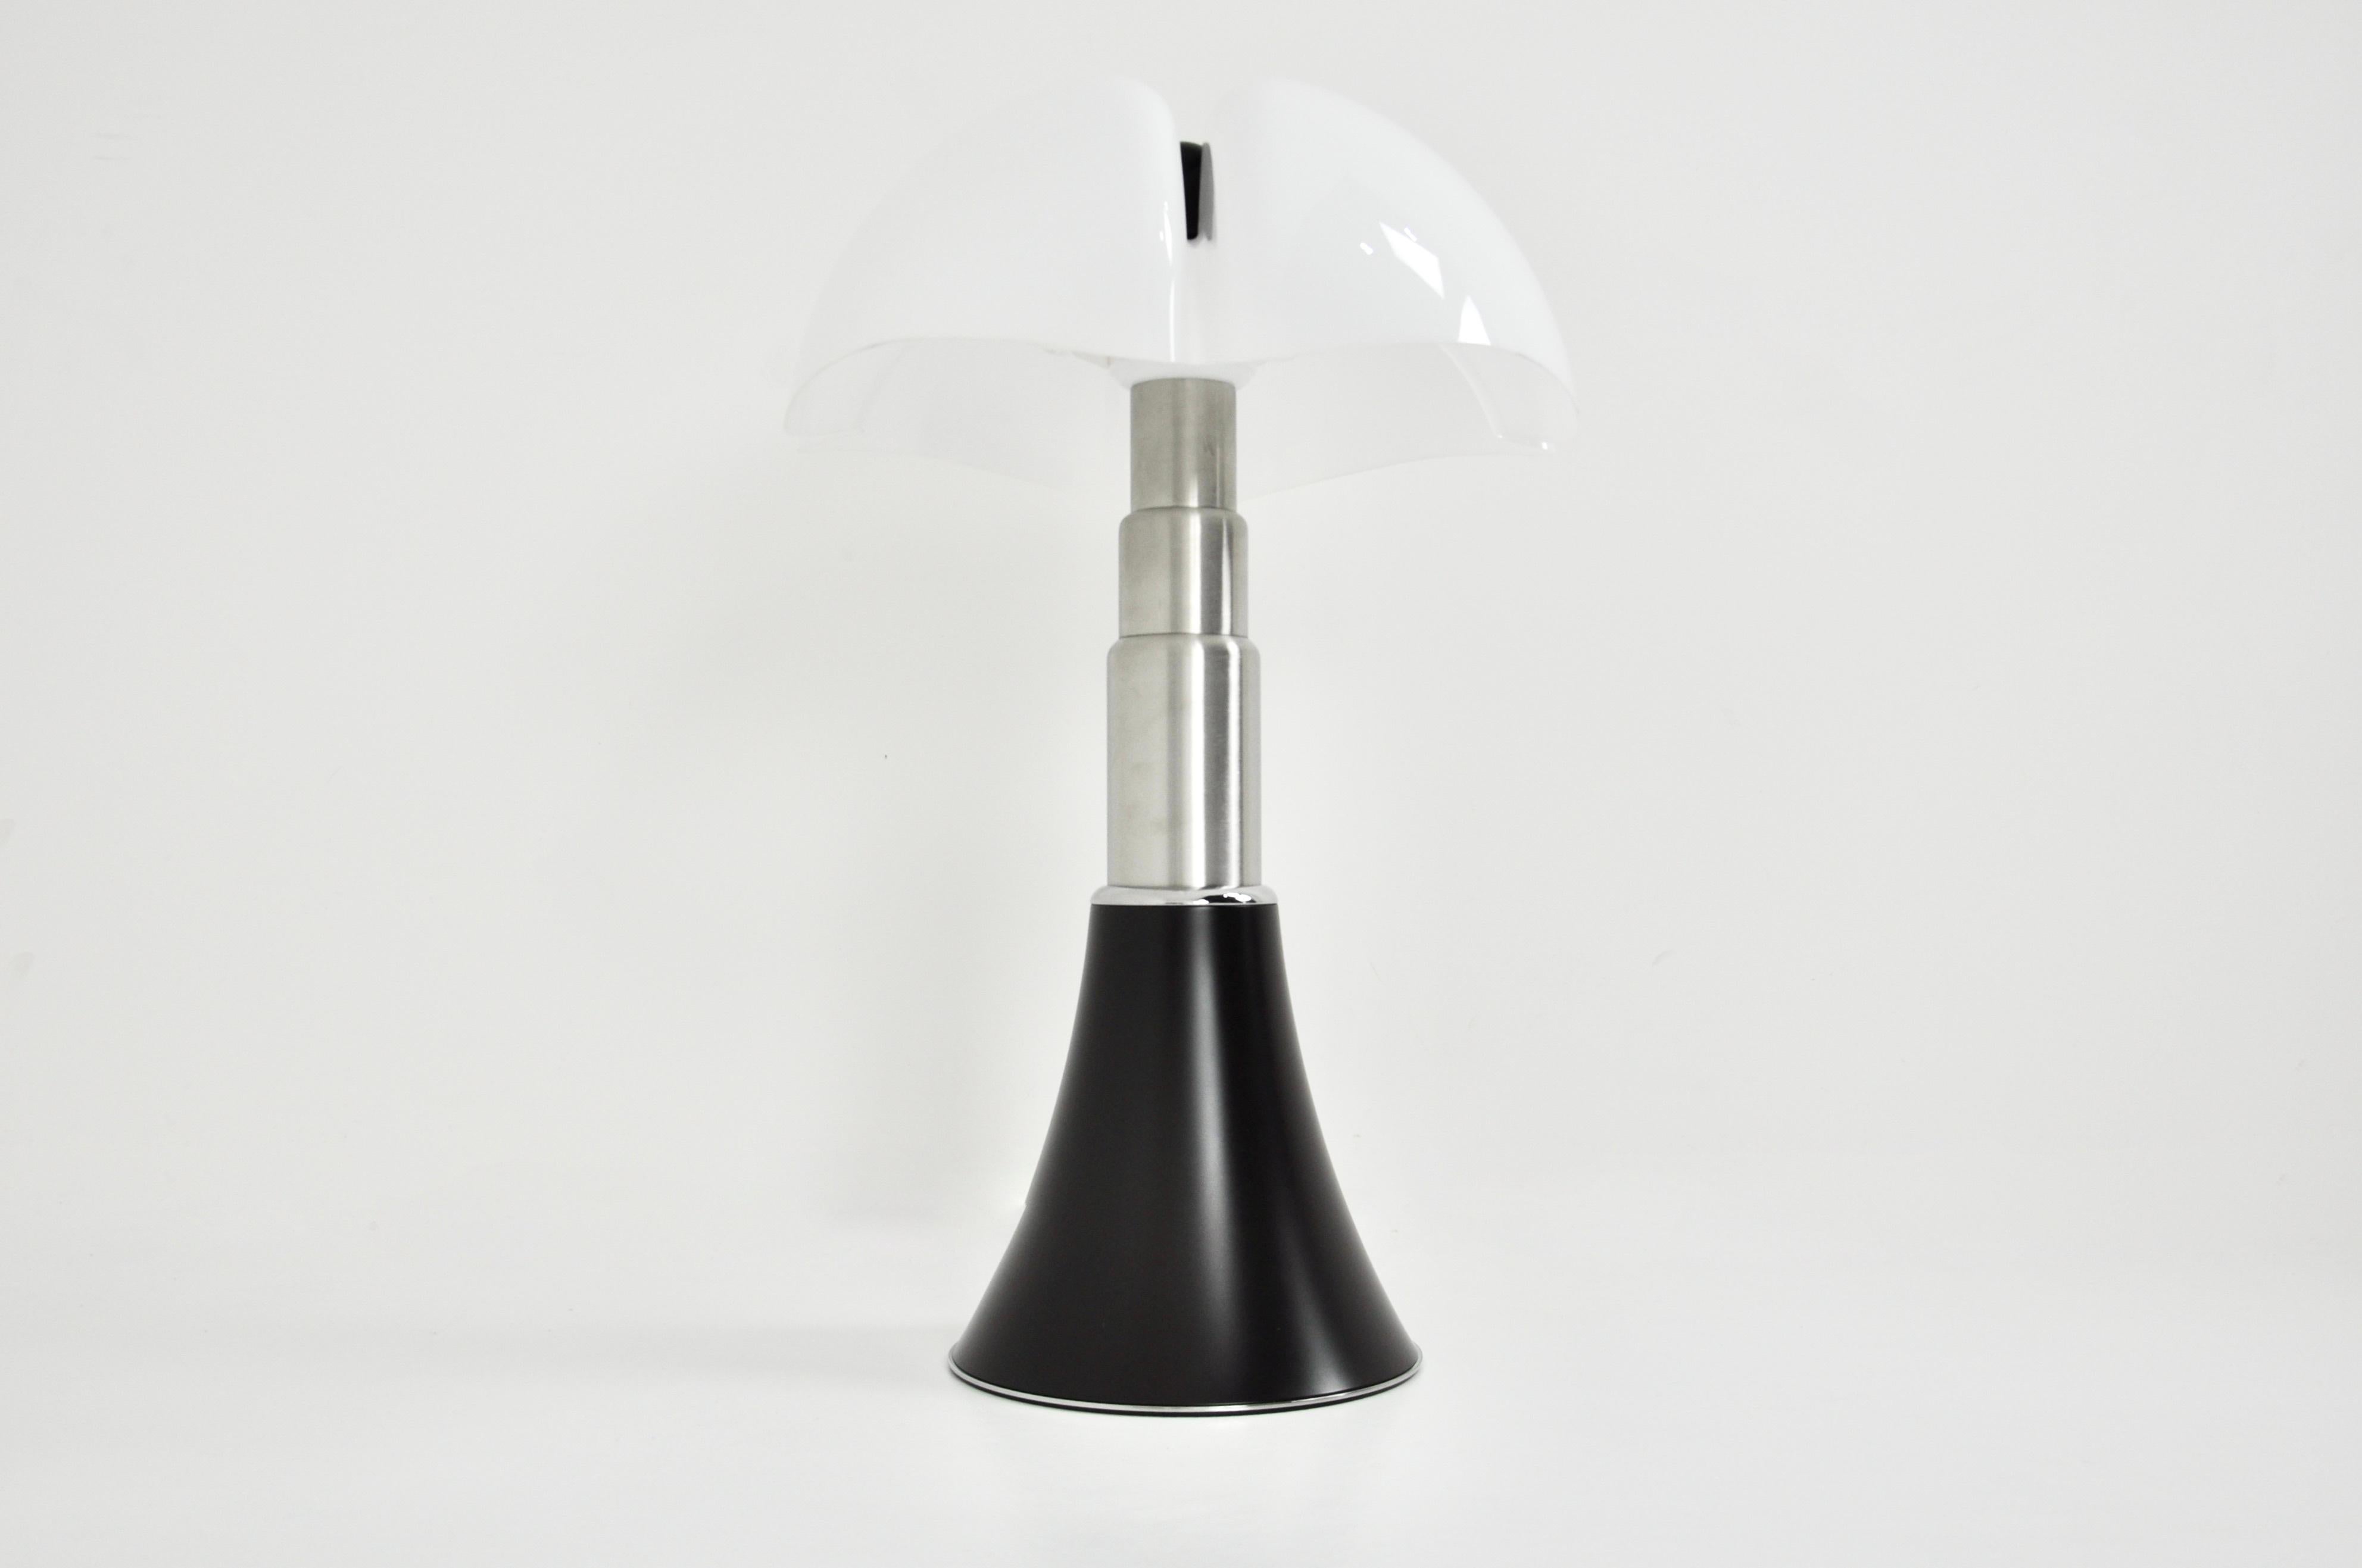 Italian Black Pipistrello Table Lamp by Gae Aulenti for Martinelli Luce